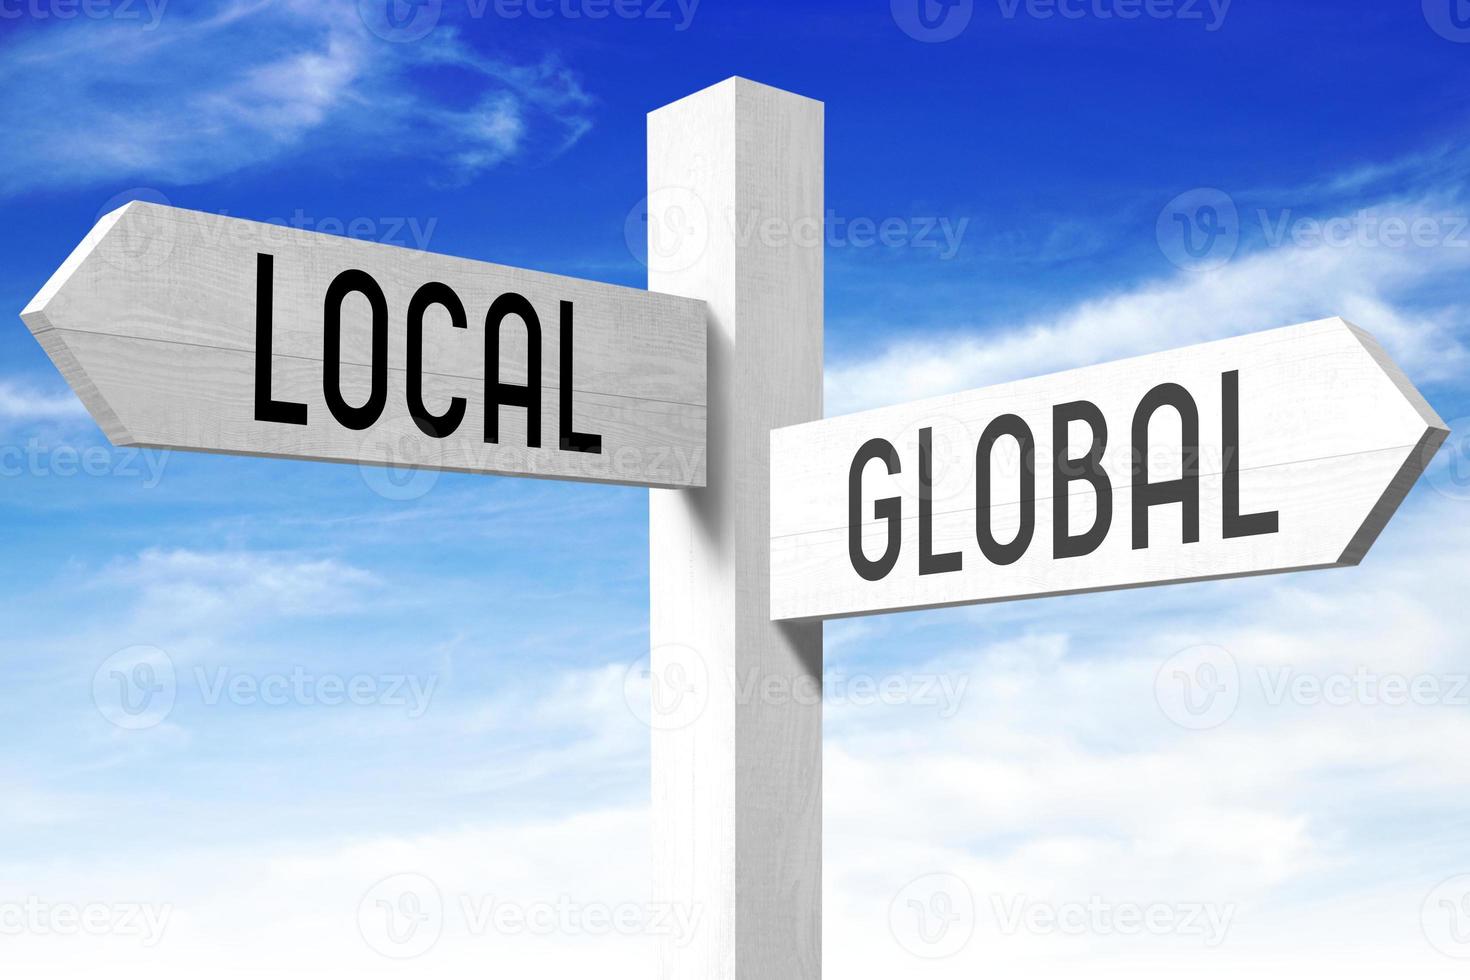 lokal, global - - hölzern Wegweiser mit zwei Pfeile und Himmel im Hintergrund foto